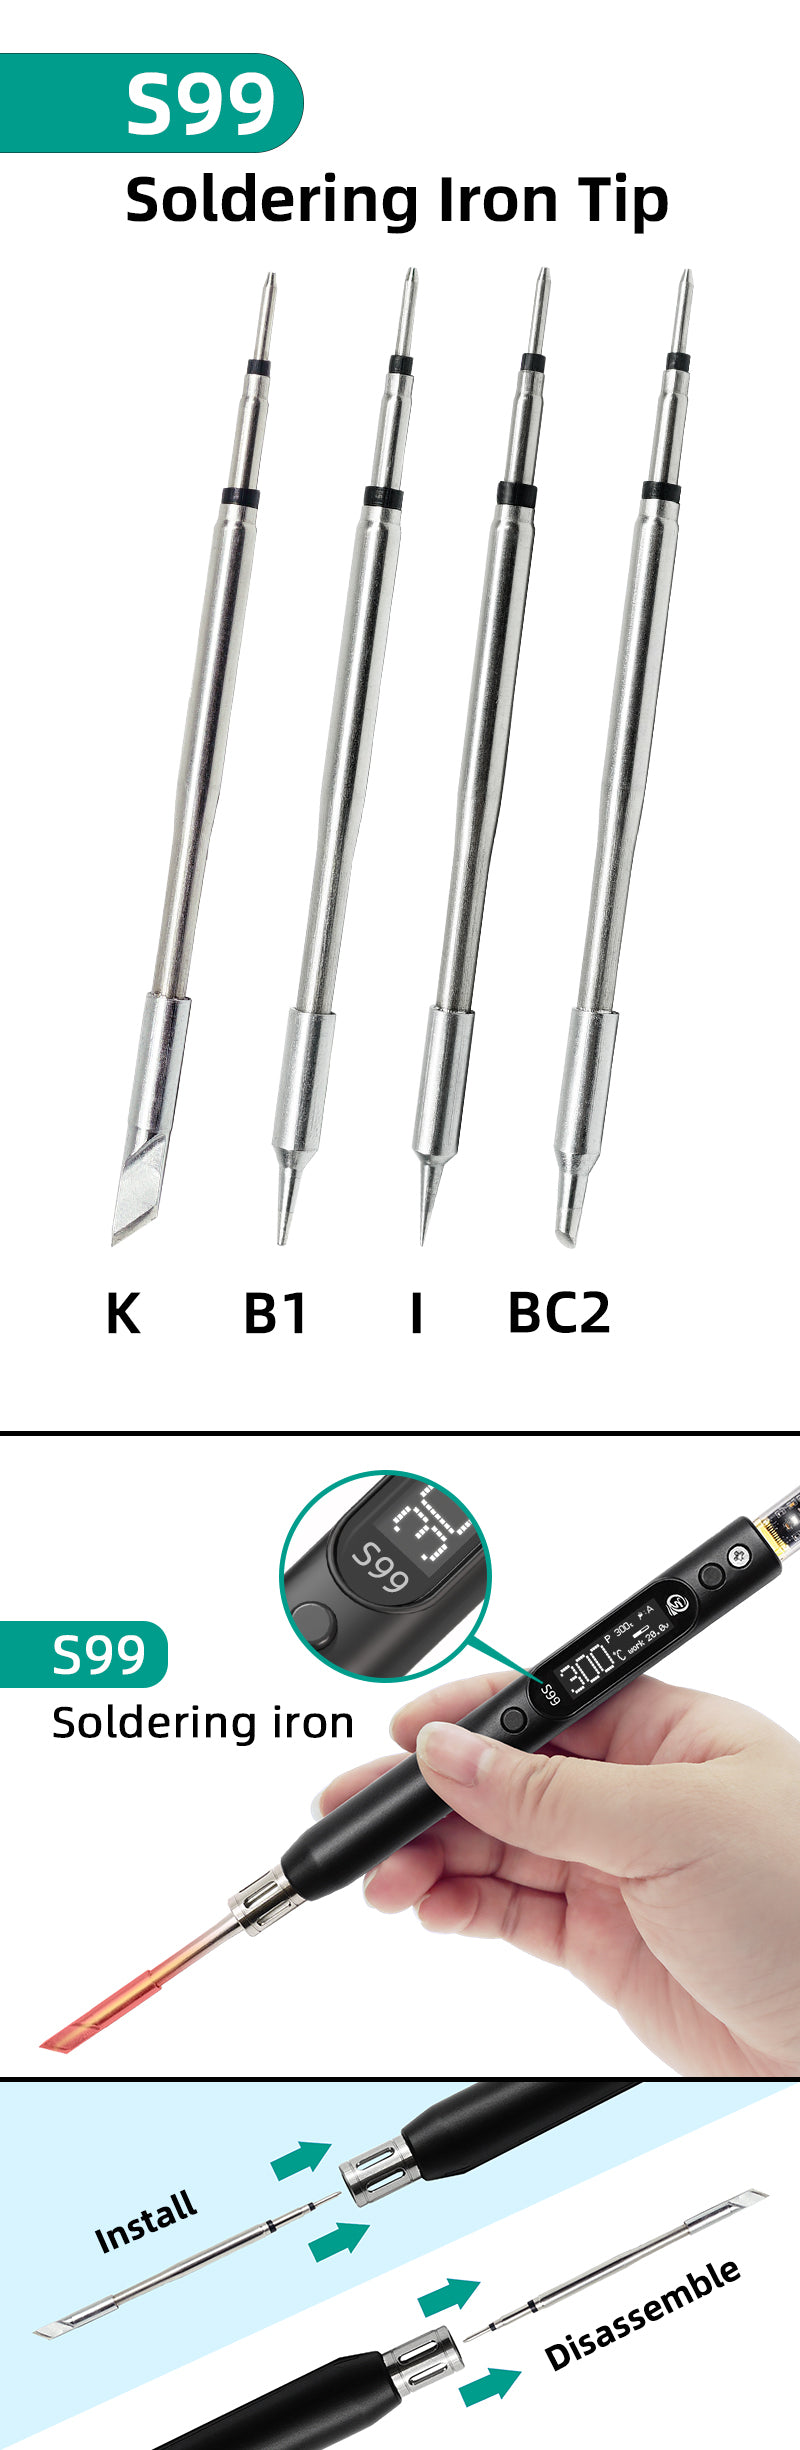 s99 soldering iron tip